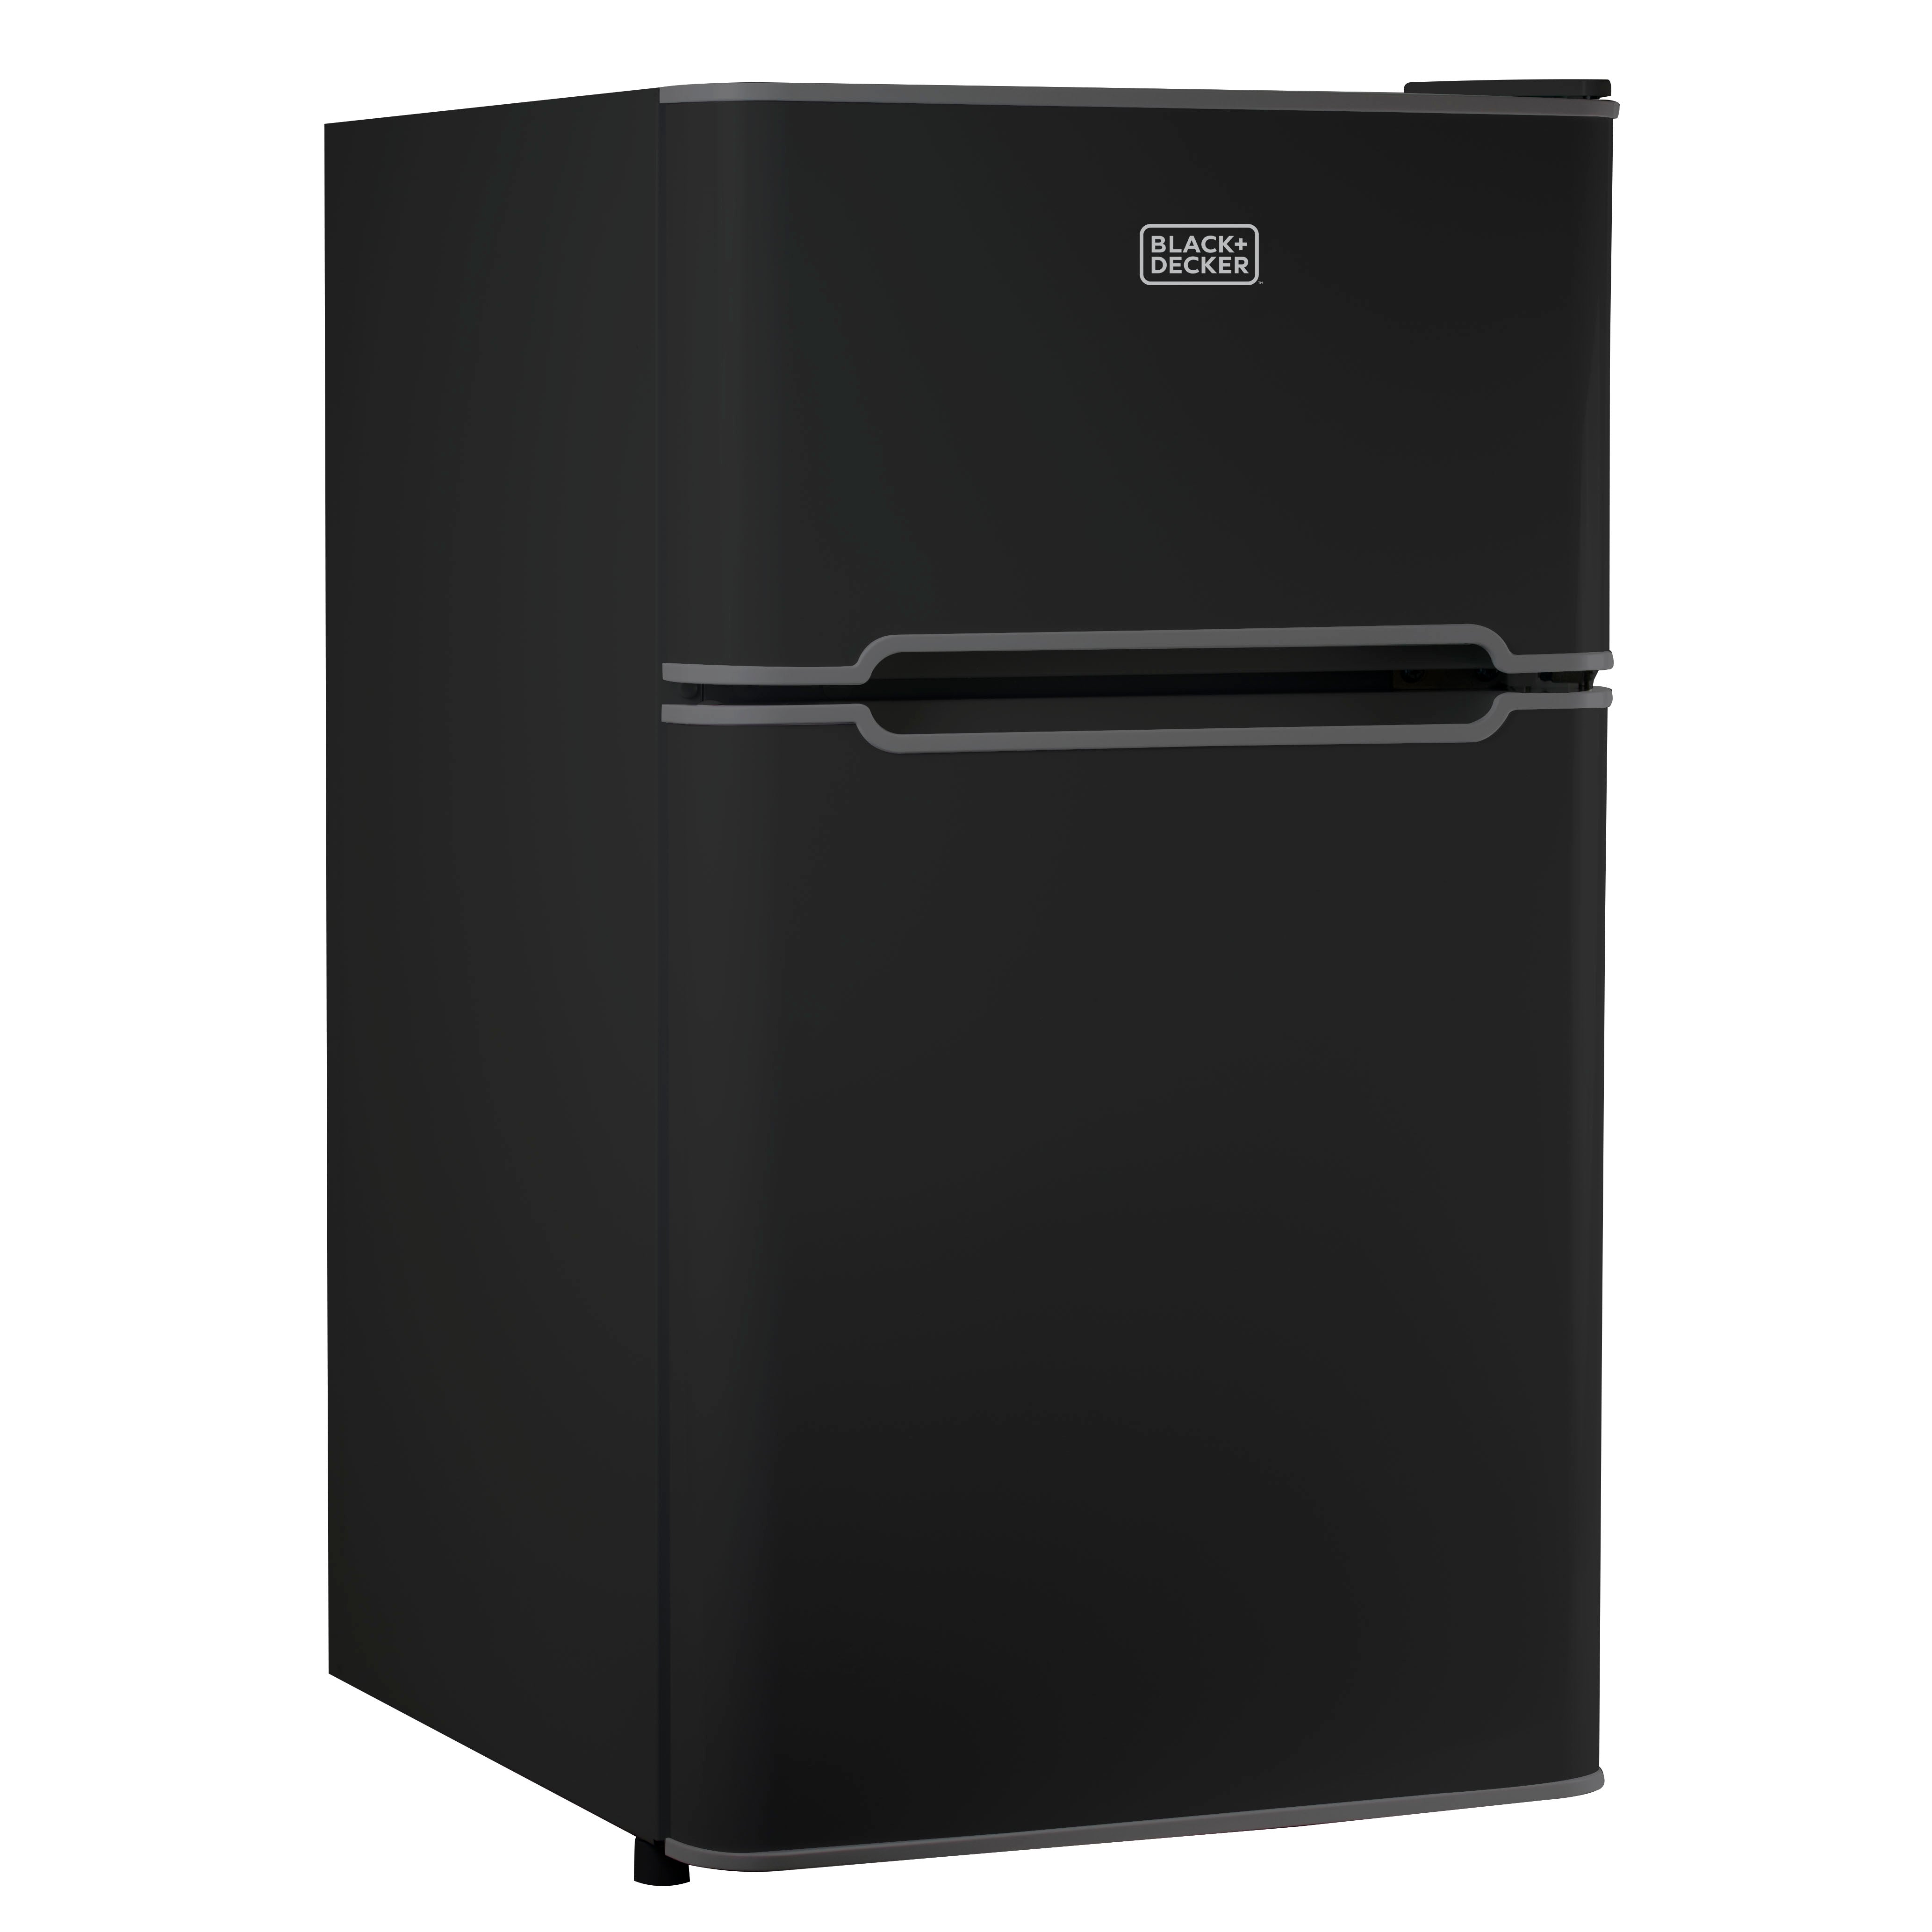 BLACK+DECKER 2 Door Refrigerator 3.1 Cu. Ft. with True Freezer, Black